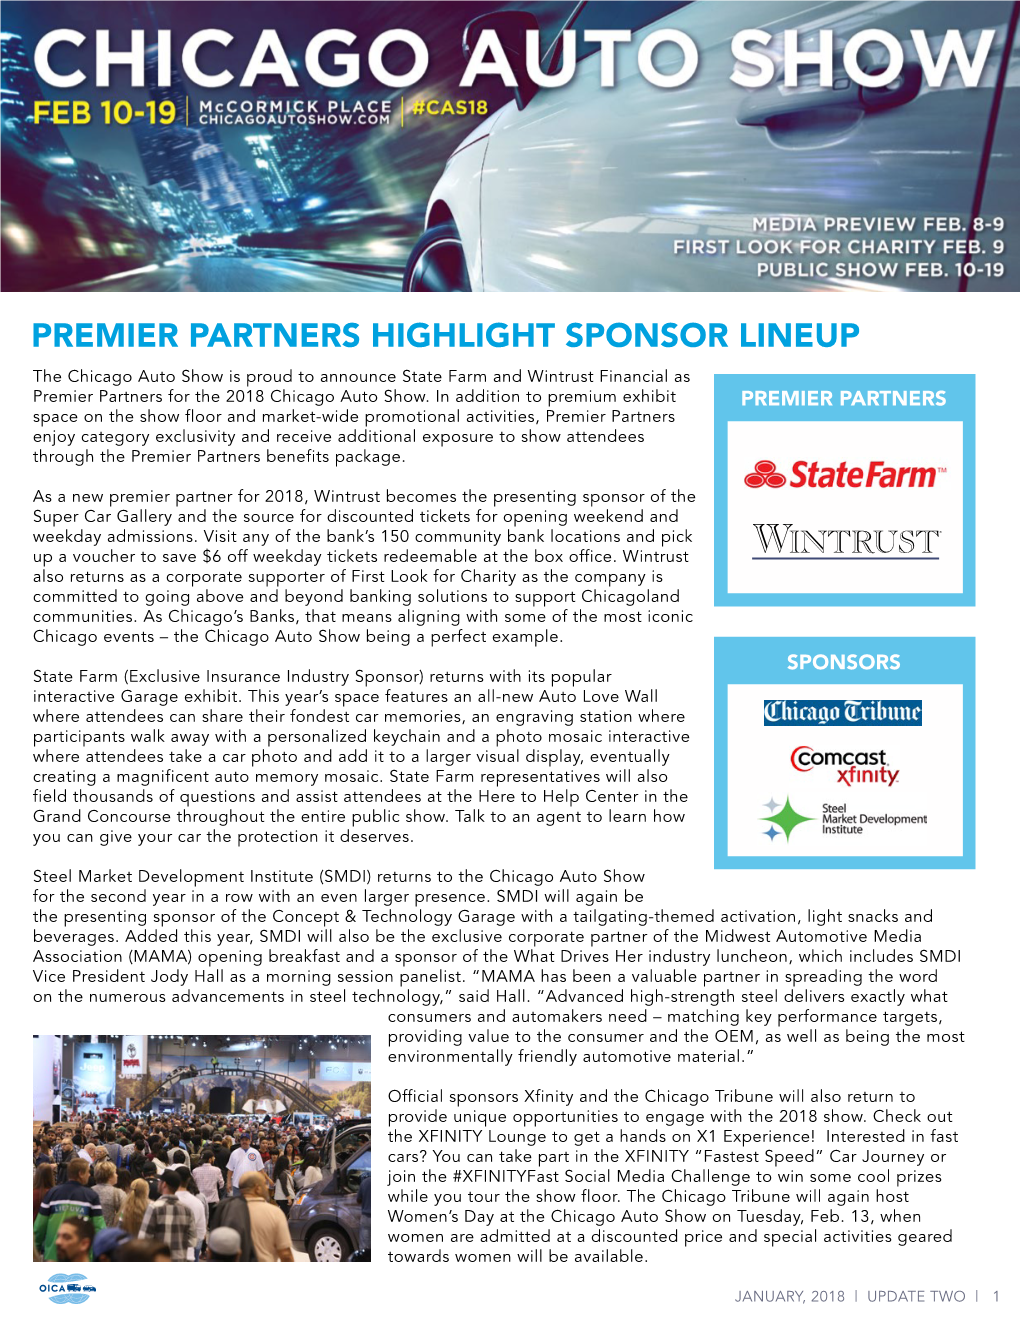 Premier Partners Highlight Sponsor